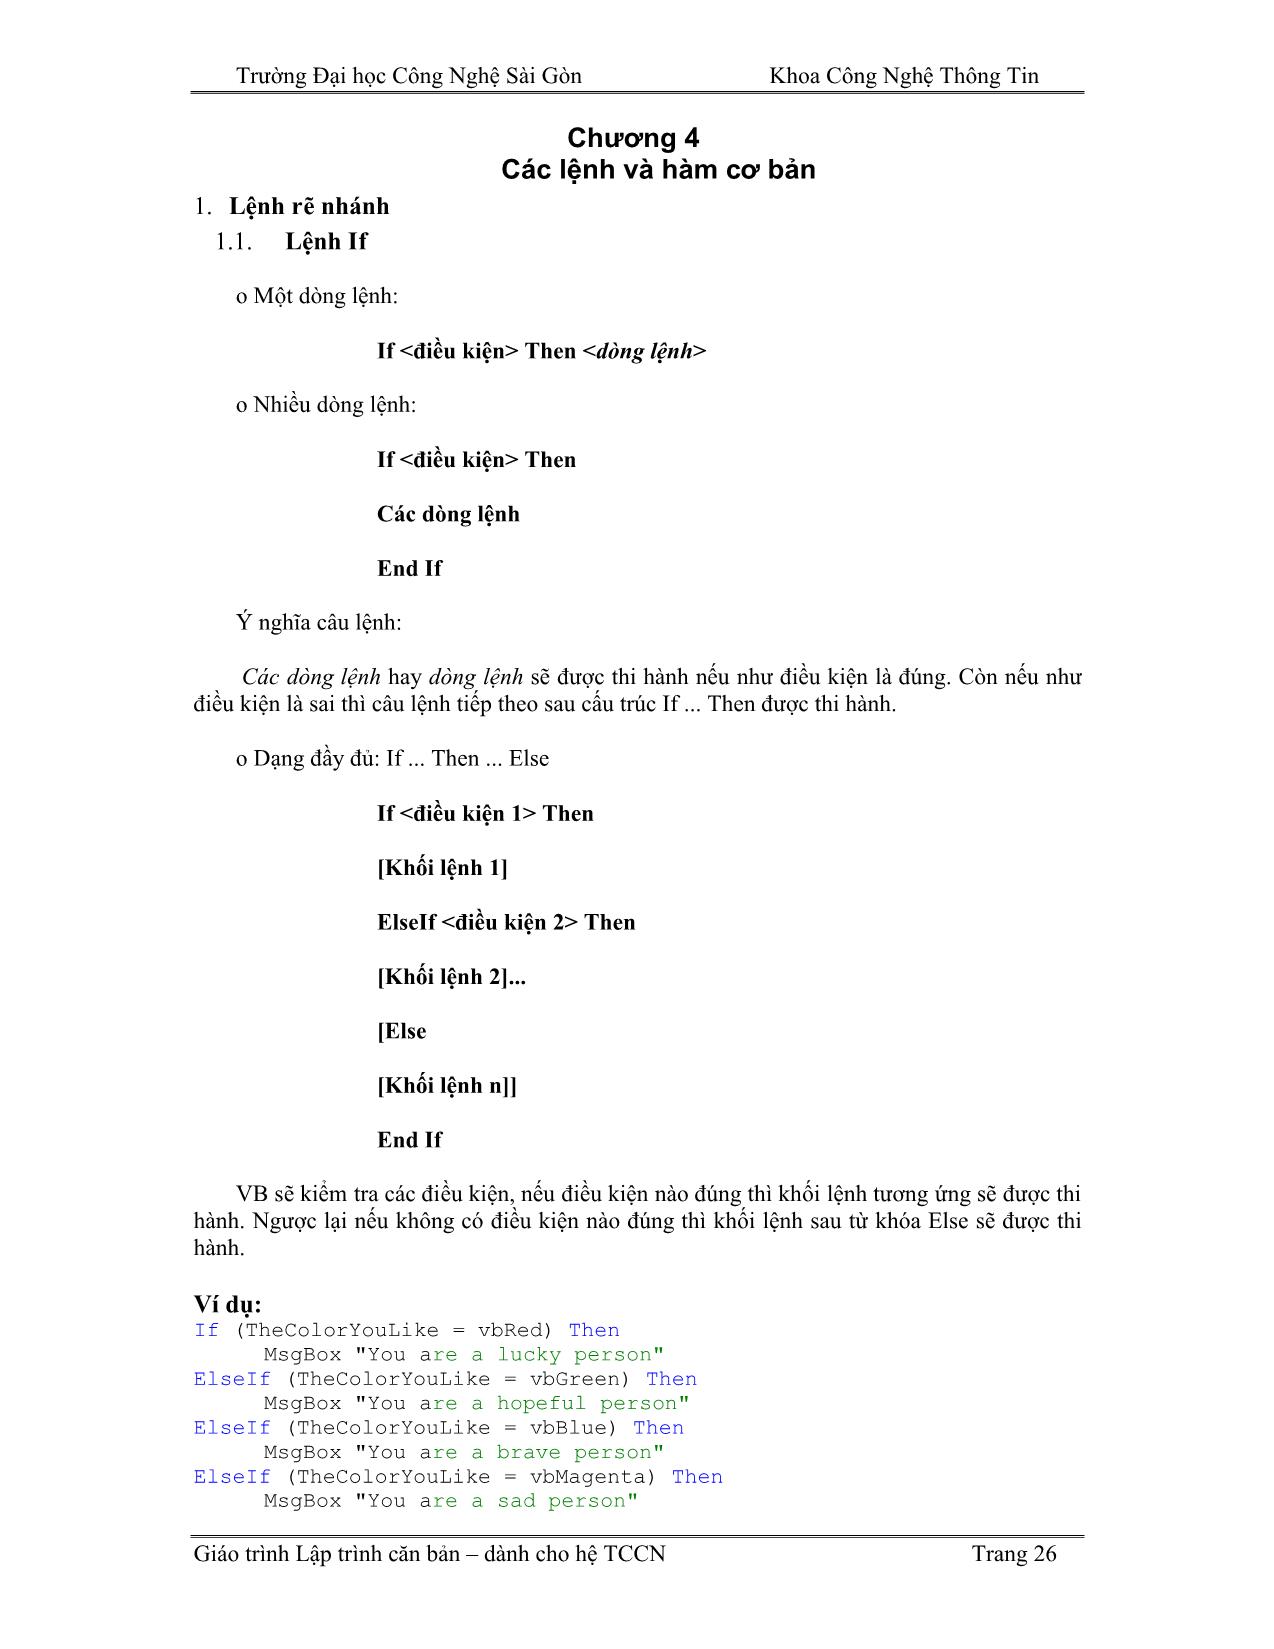 Giáo trình Lập trình căn bản Visual Basic (Phần 2) trang 1